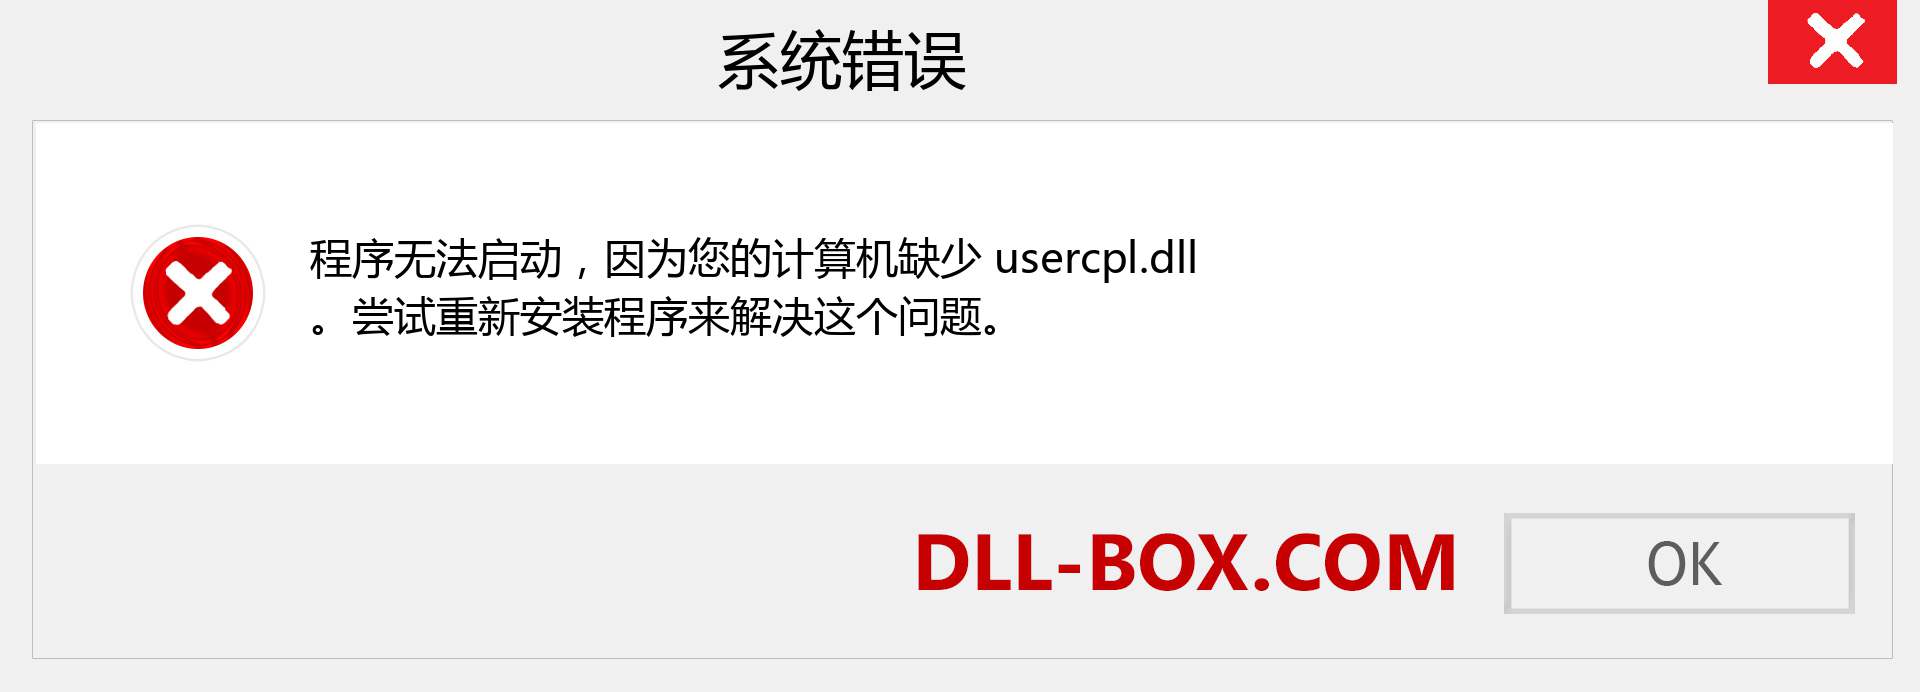 usercpl.dll 文件丢失？。 适用于 Windows 7、8、10 的下载 - 修复 Windows、照片、图像上的 usercpl dll 丢失错误